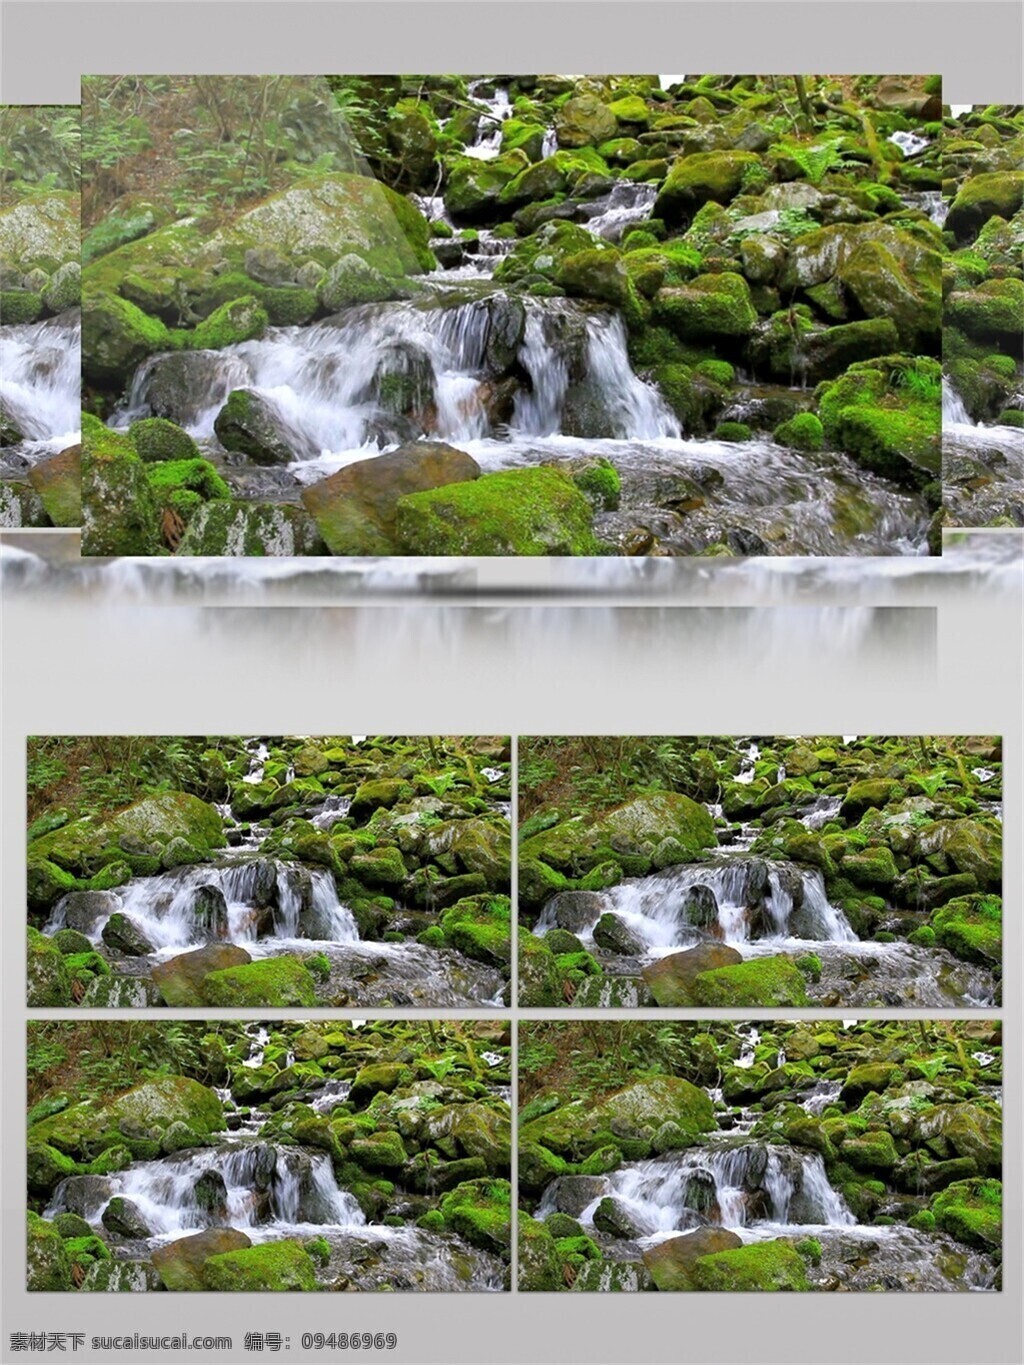 青山绿水 山清水秀 视频 瀑布 流水 清新 环保 大自然 清幽 青苔 苔藓 生态环境